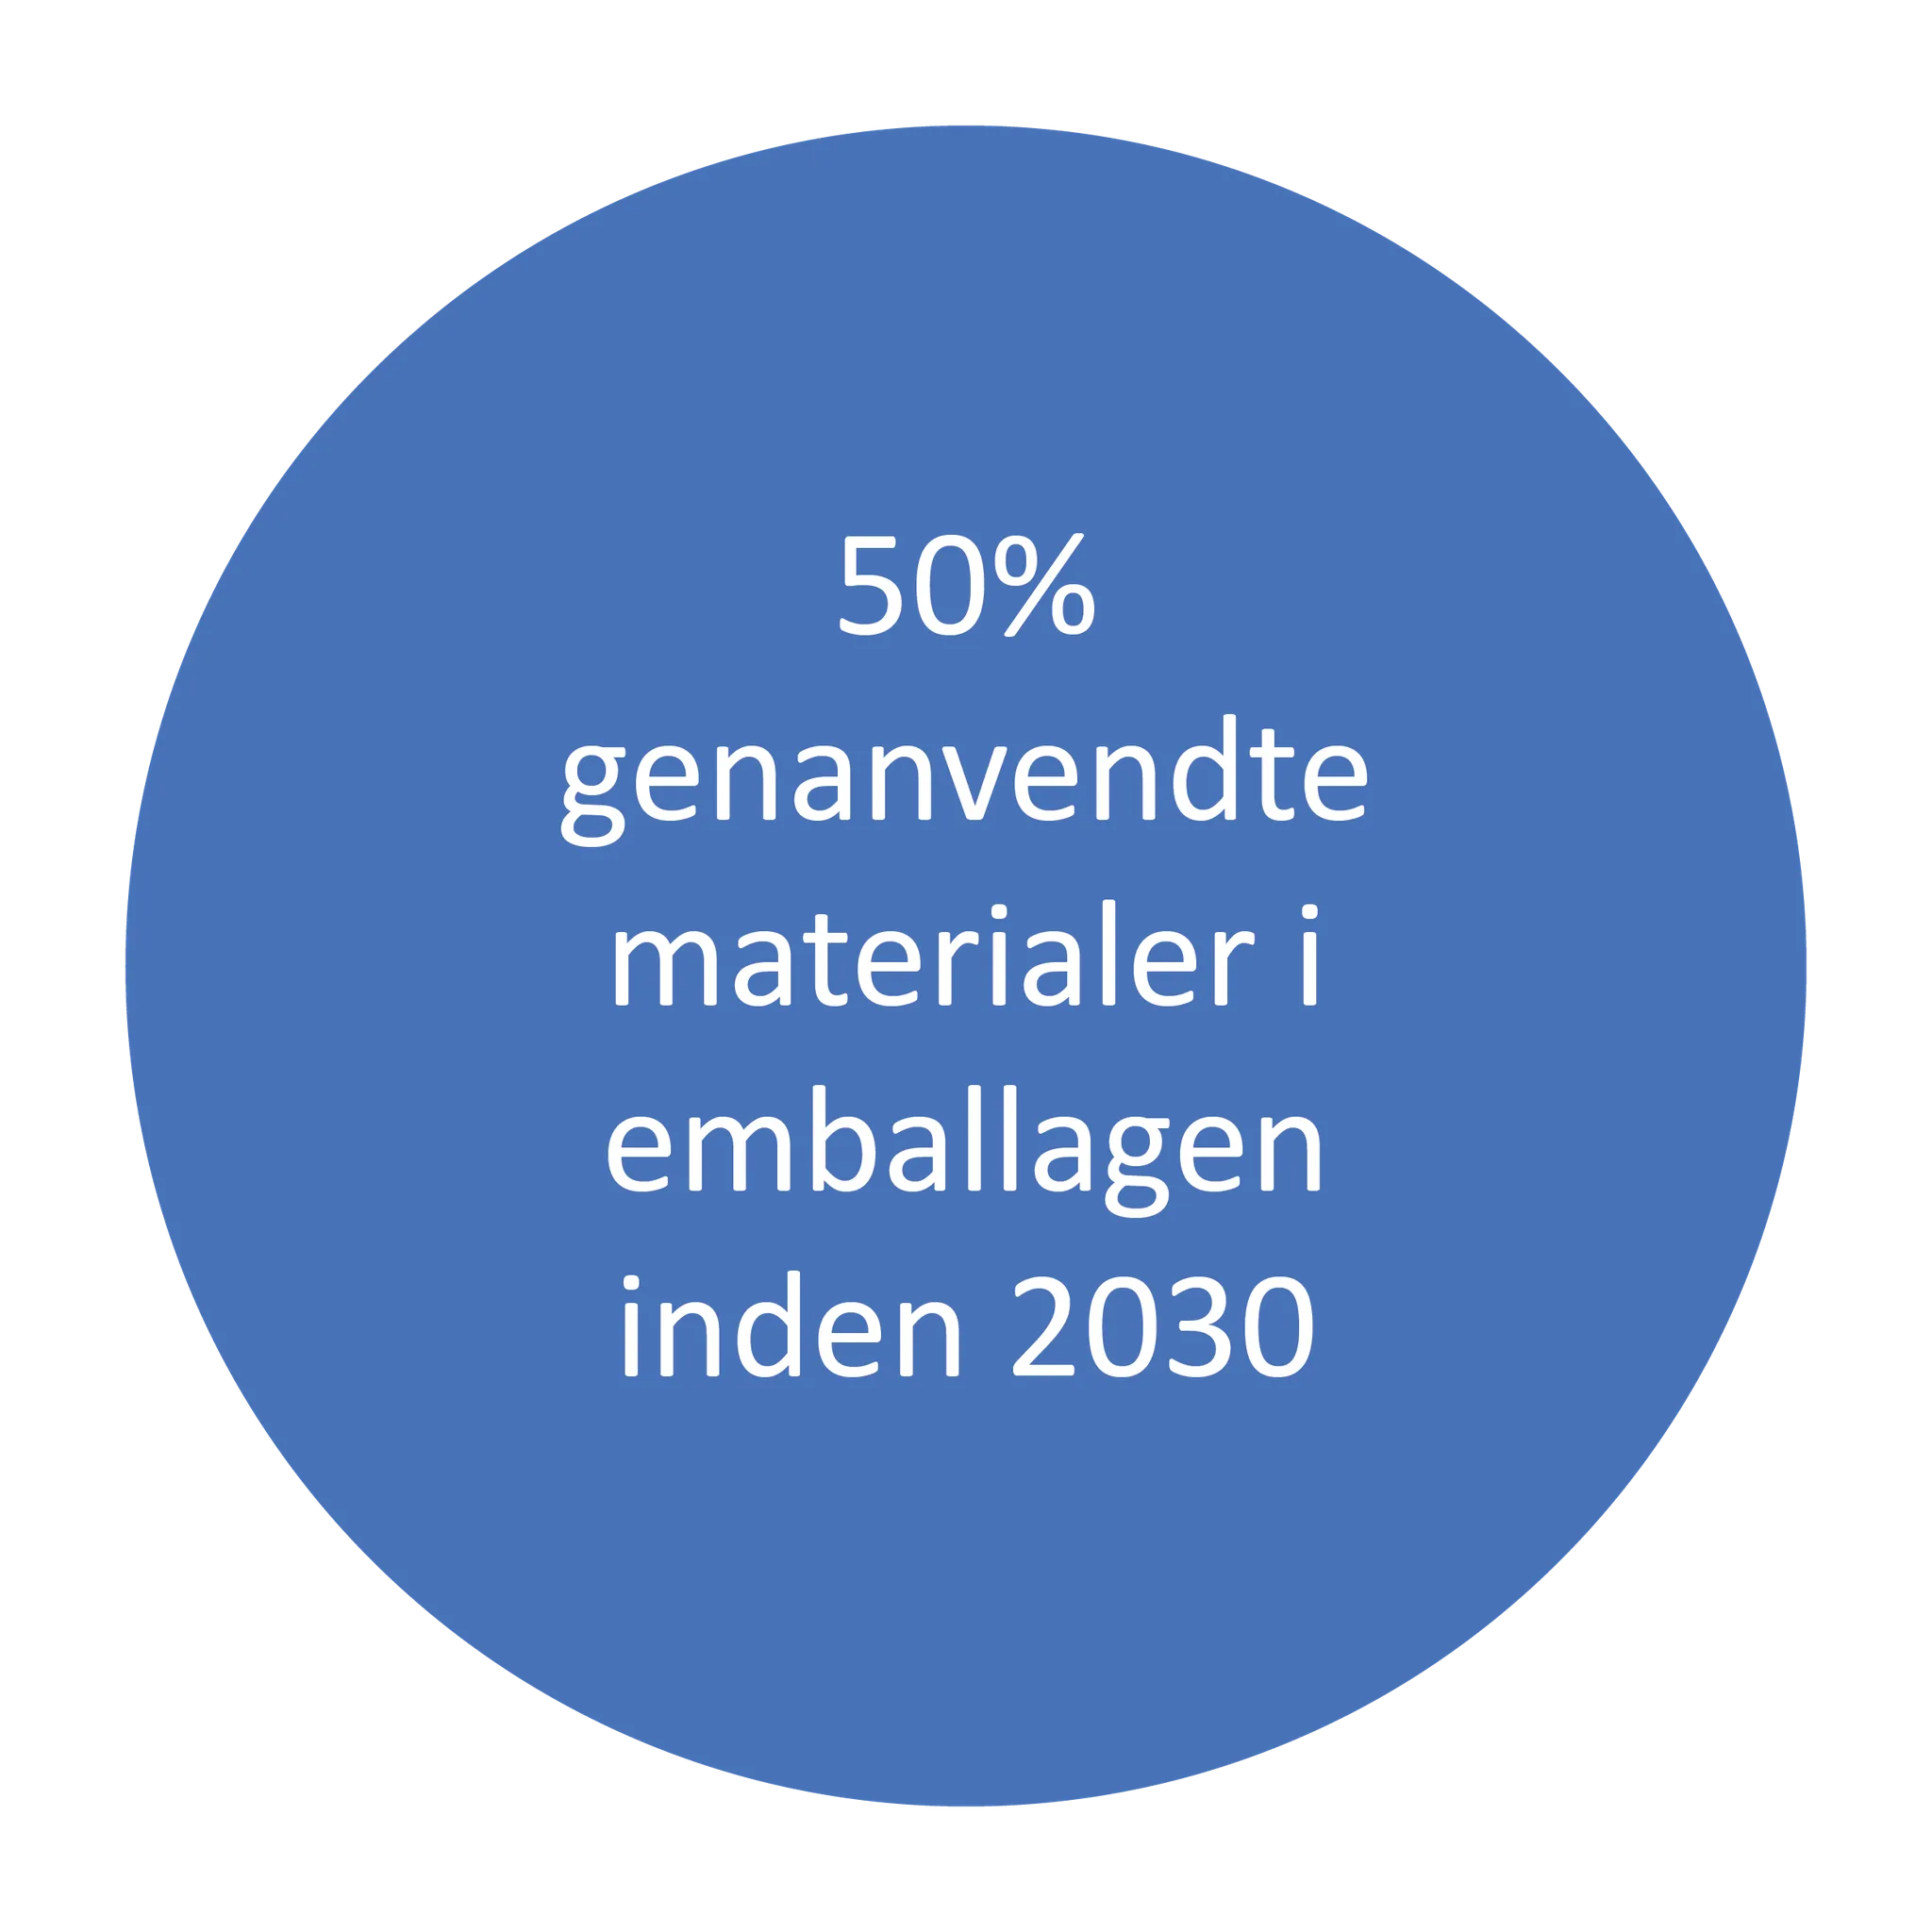 Tre blå cirkler, der indeholder tekst med forskellige mål om indsamling og genanvendelse af emballage